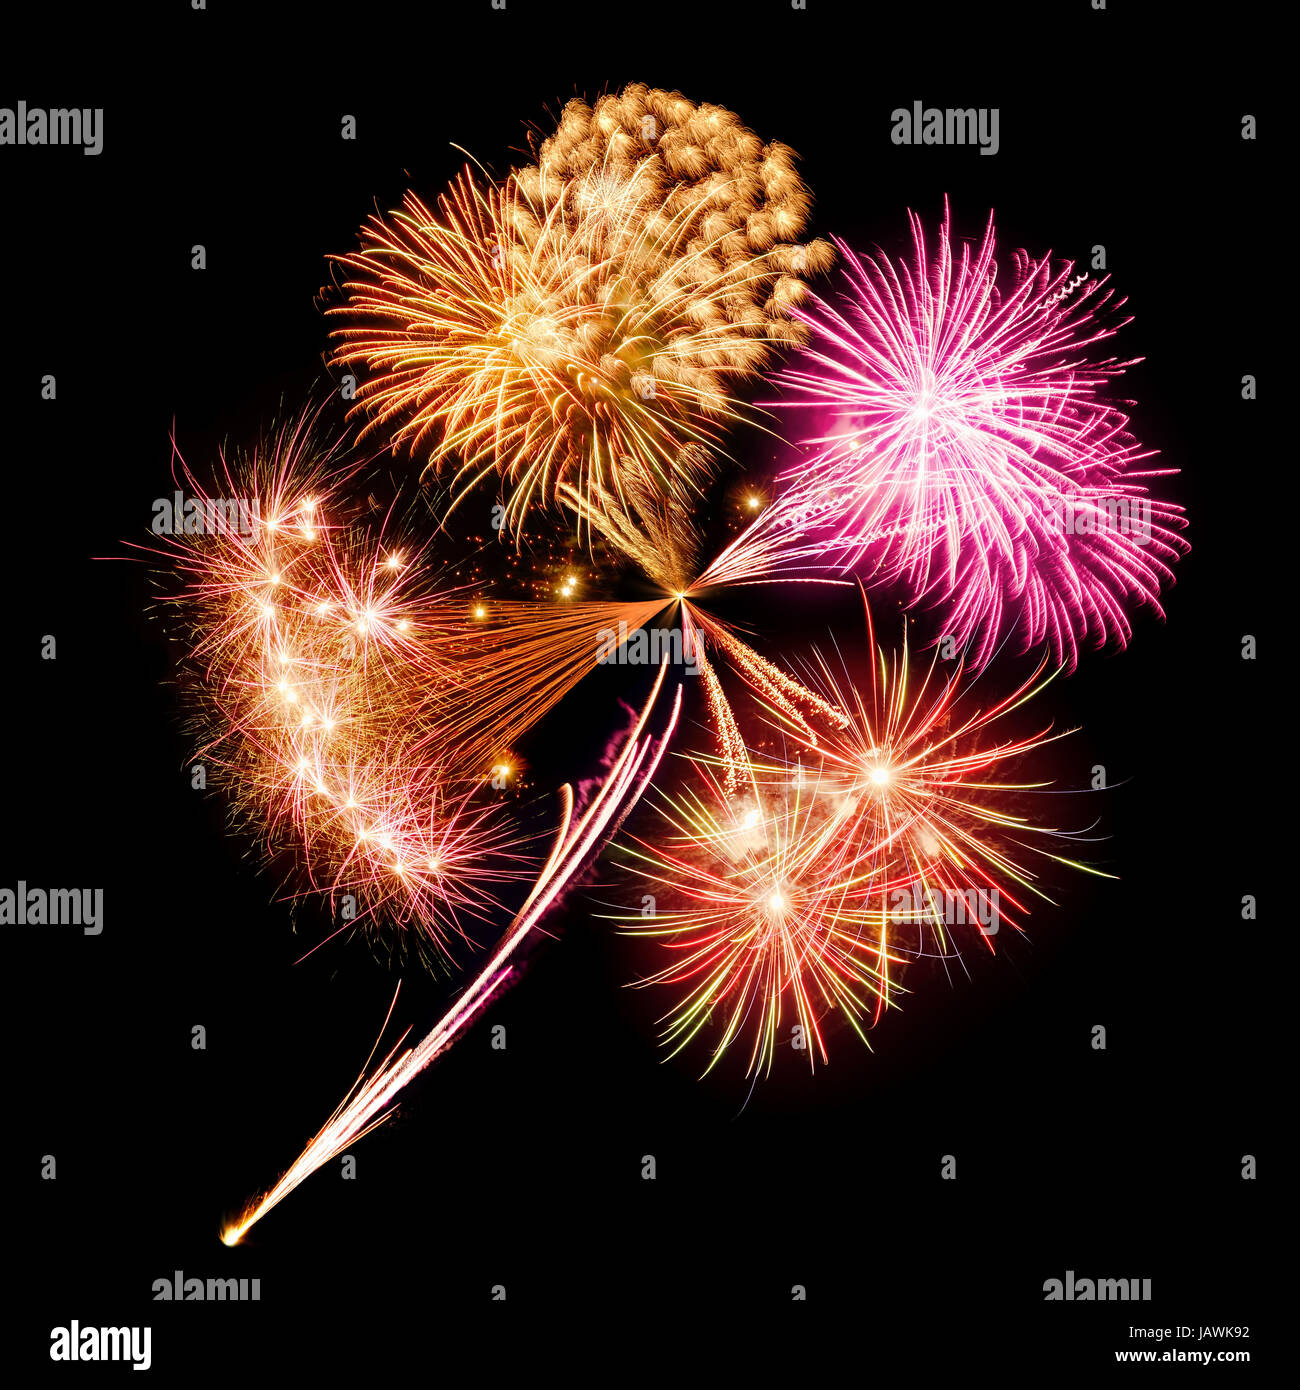 Konzeptbild von Feuerwerk in Form eines Kleeblattes auf schwarzem Hintergrund Stock Photo